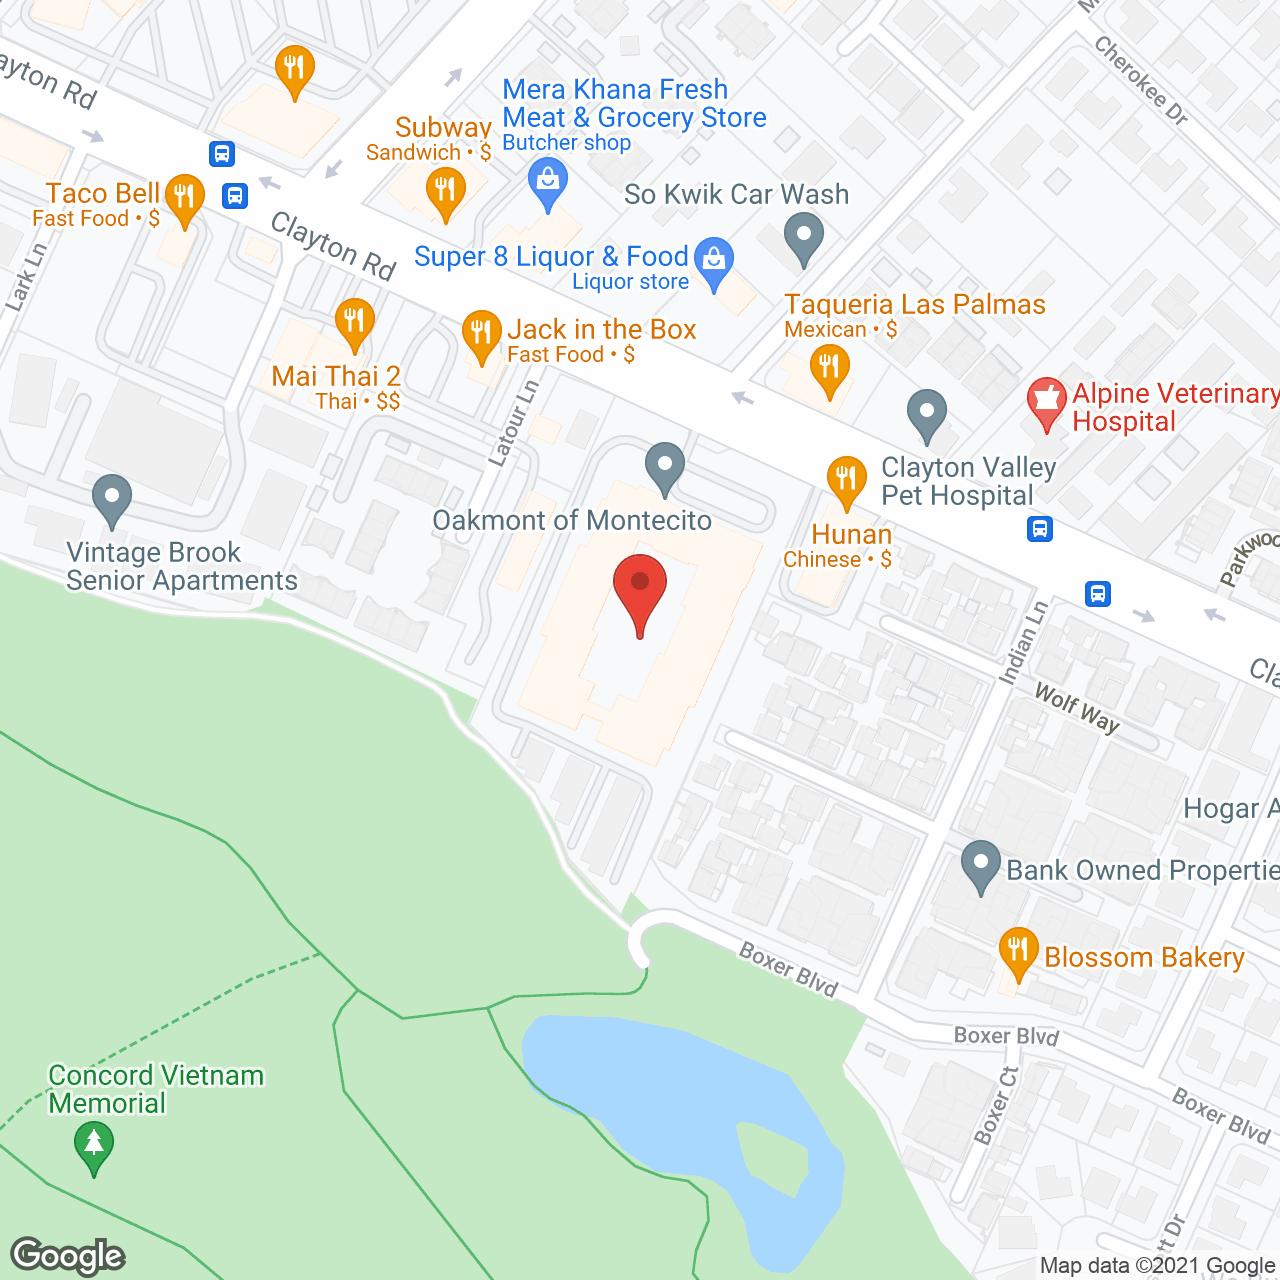 Oakmont of Montecito in google map